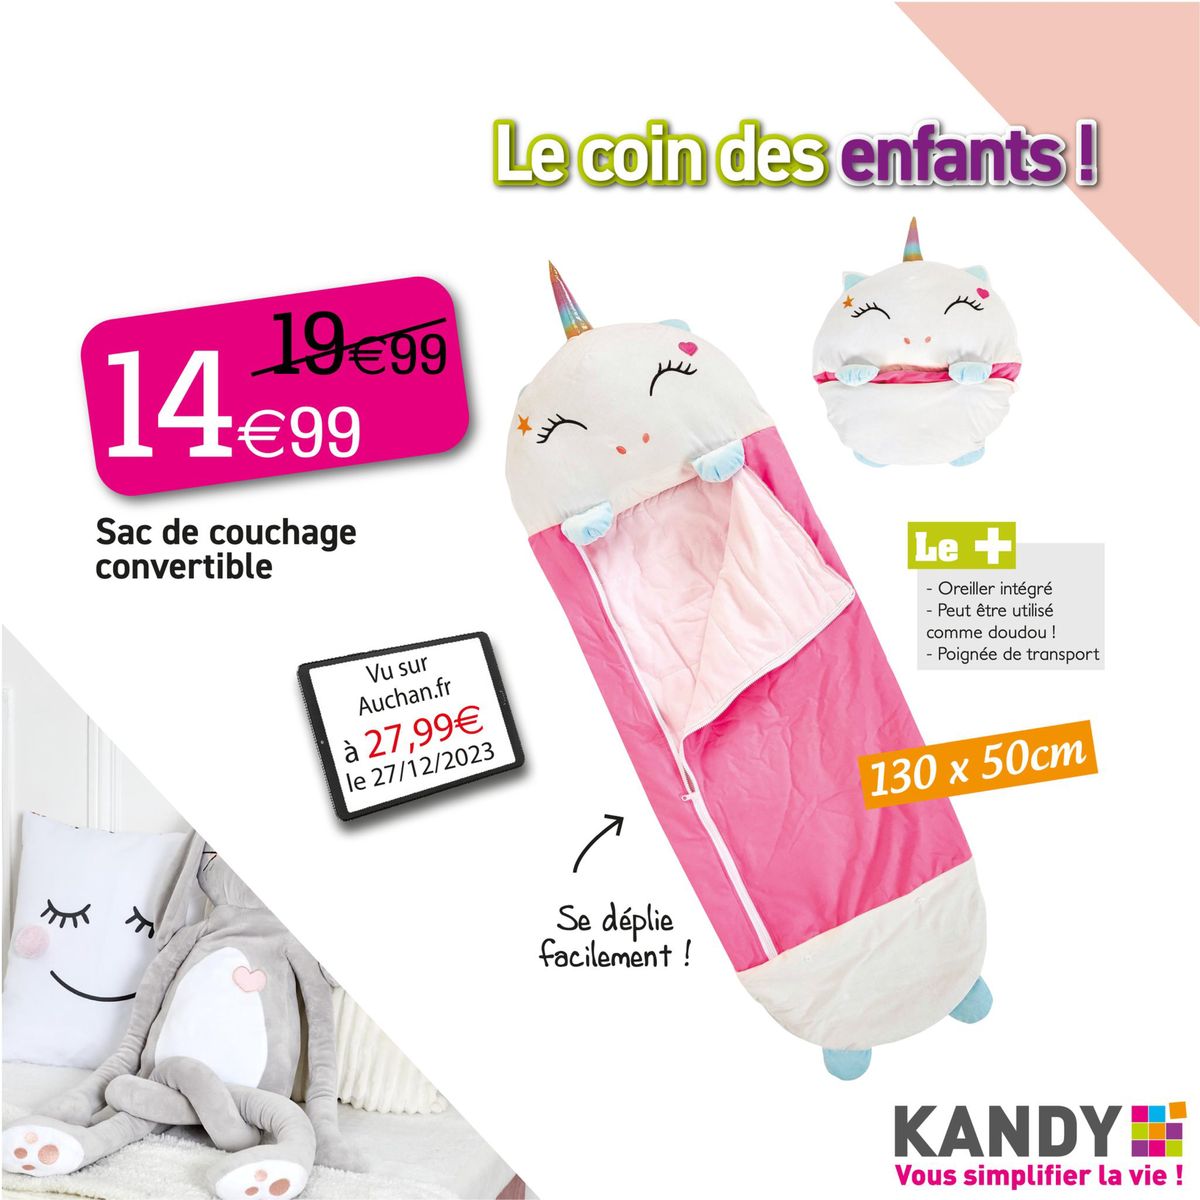 Catalogue LE COIN DES ENFANTS !, page 00007